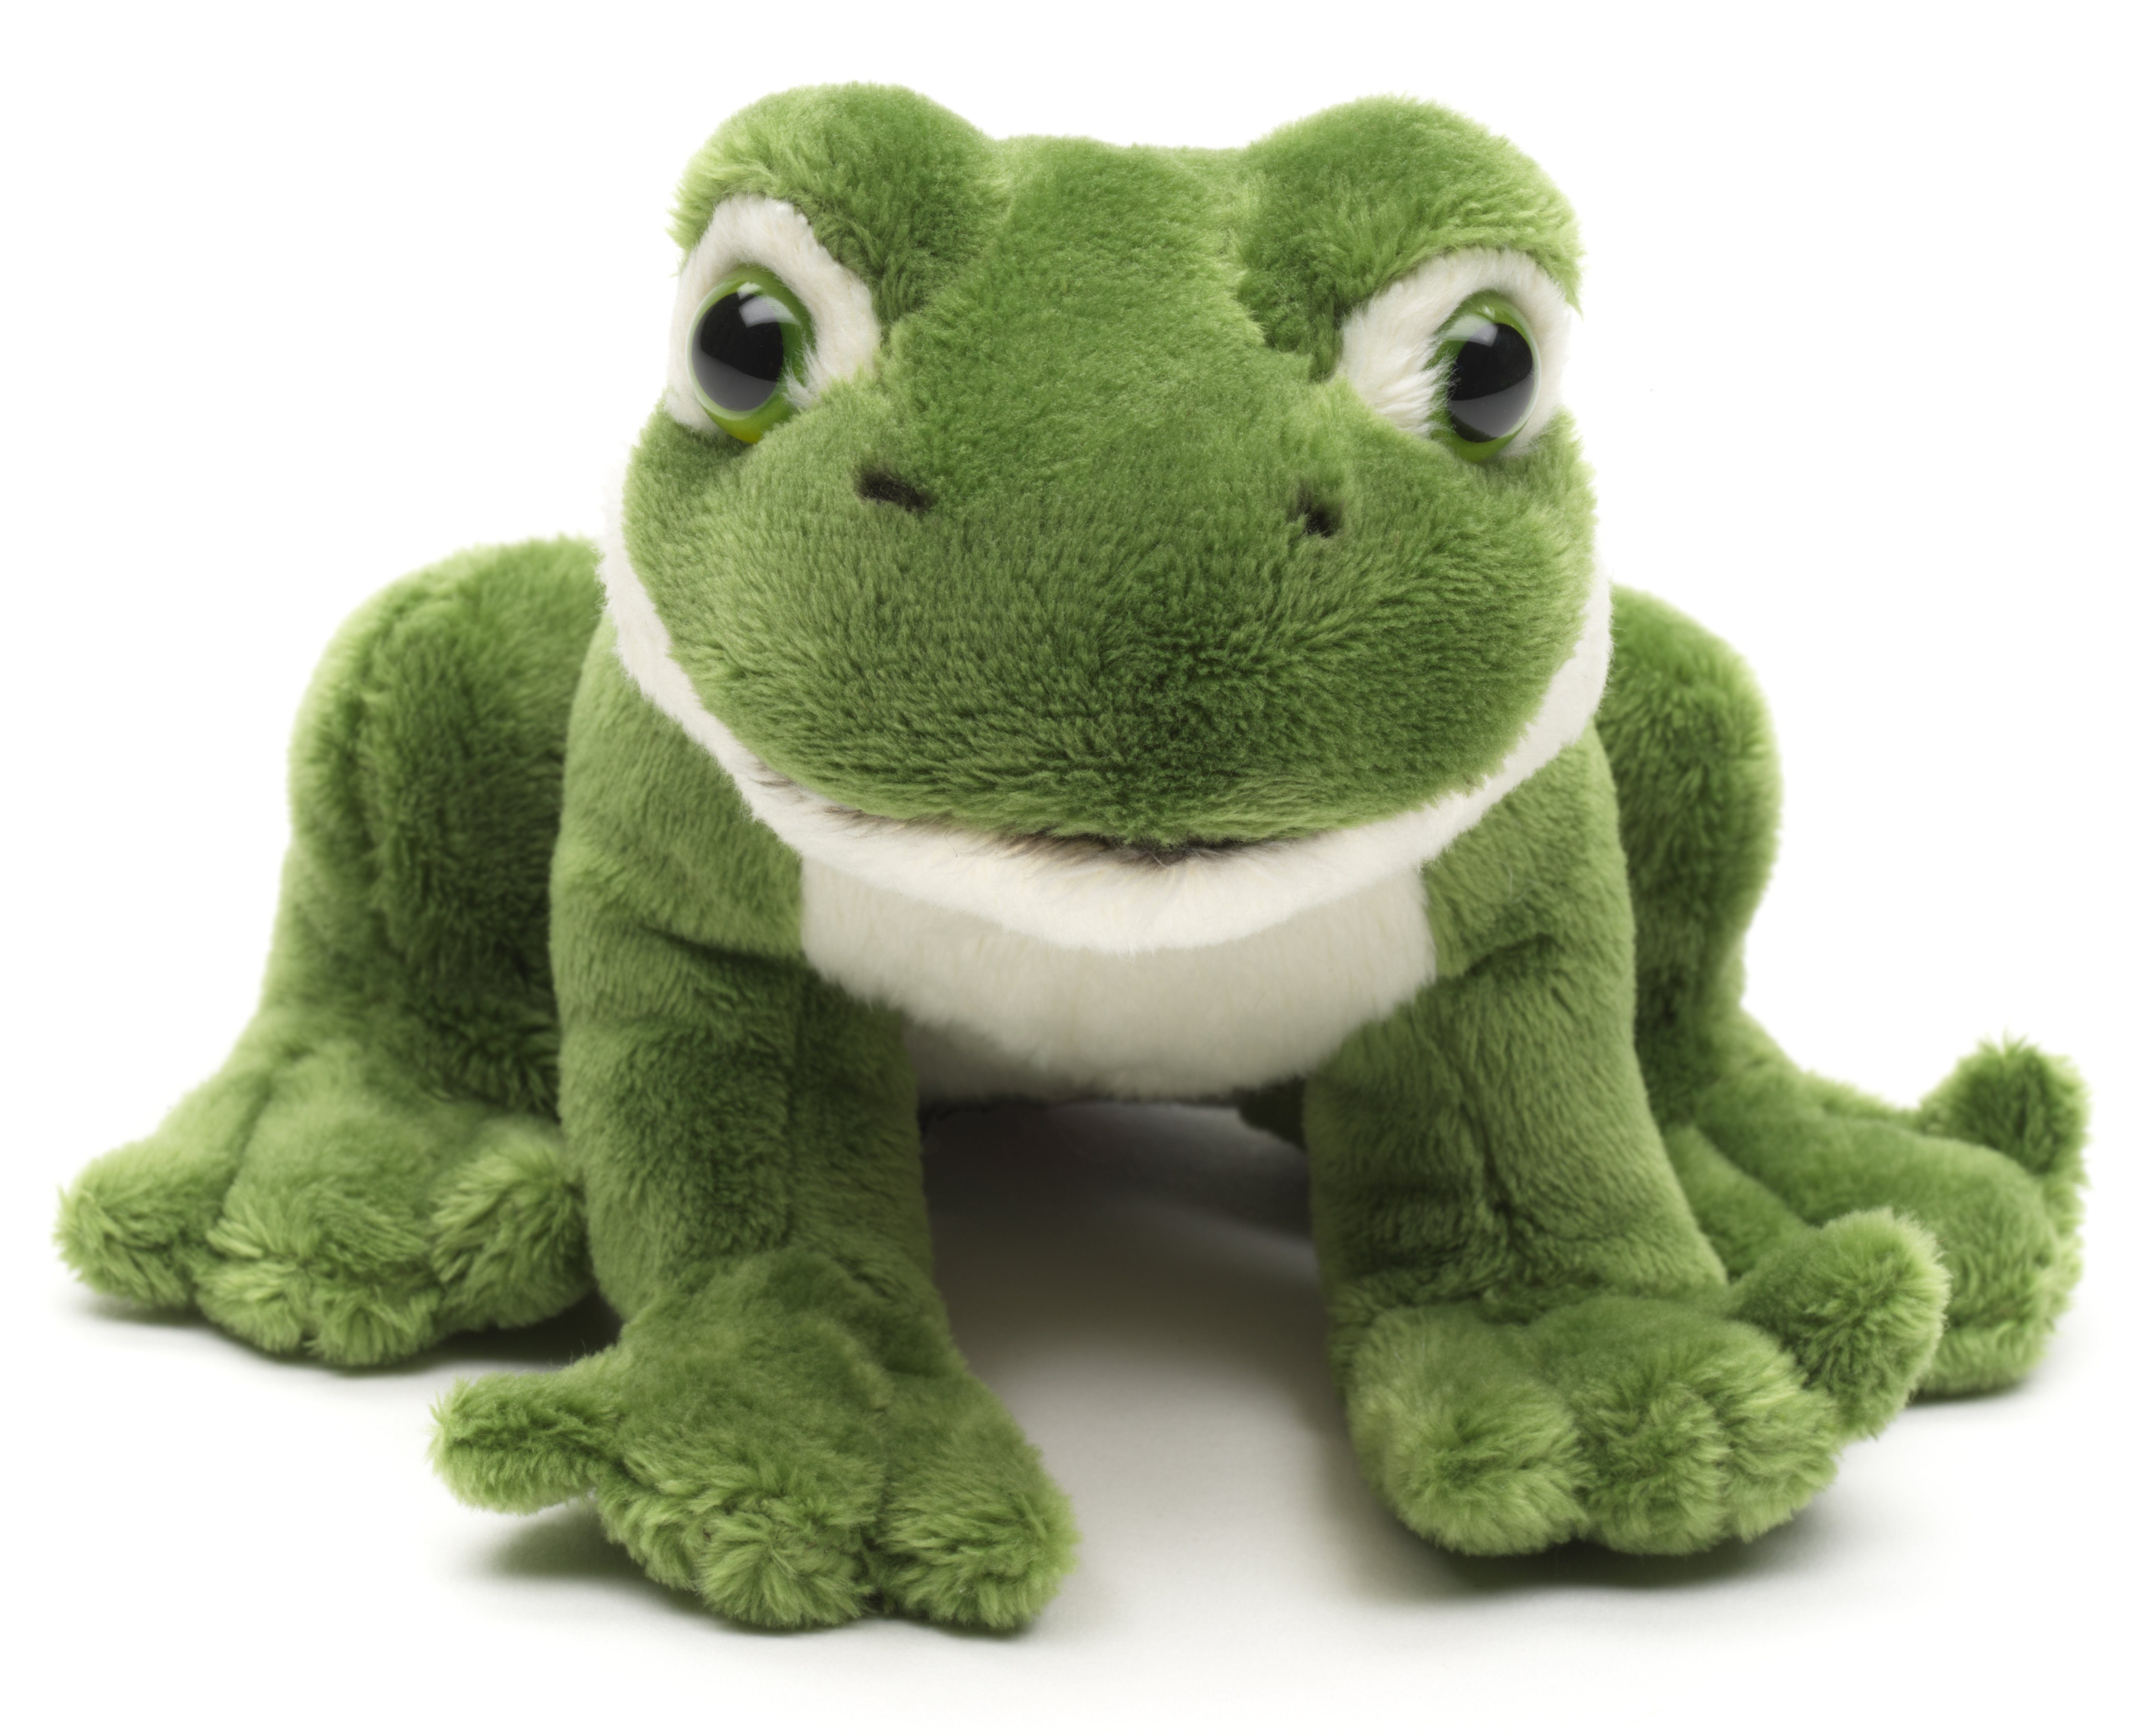 Uni-Toys Kuscheltier Grüner Frosch Plushie, sitzend - 13 cm (Länge) - Plüsch, Plüschtier, zu 100 % recyceltes Füllmaterial